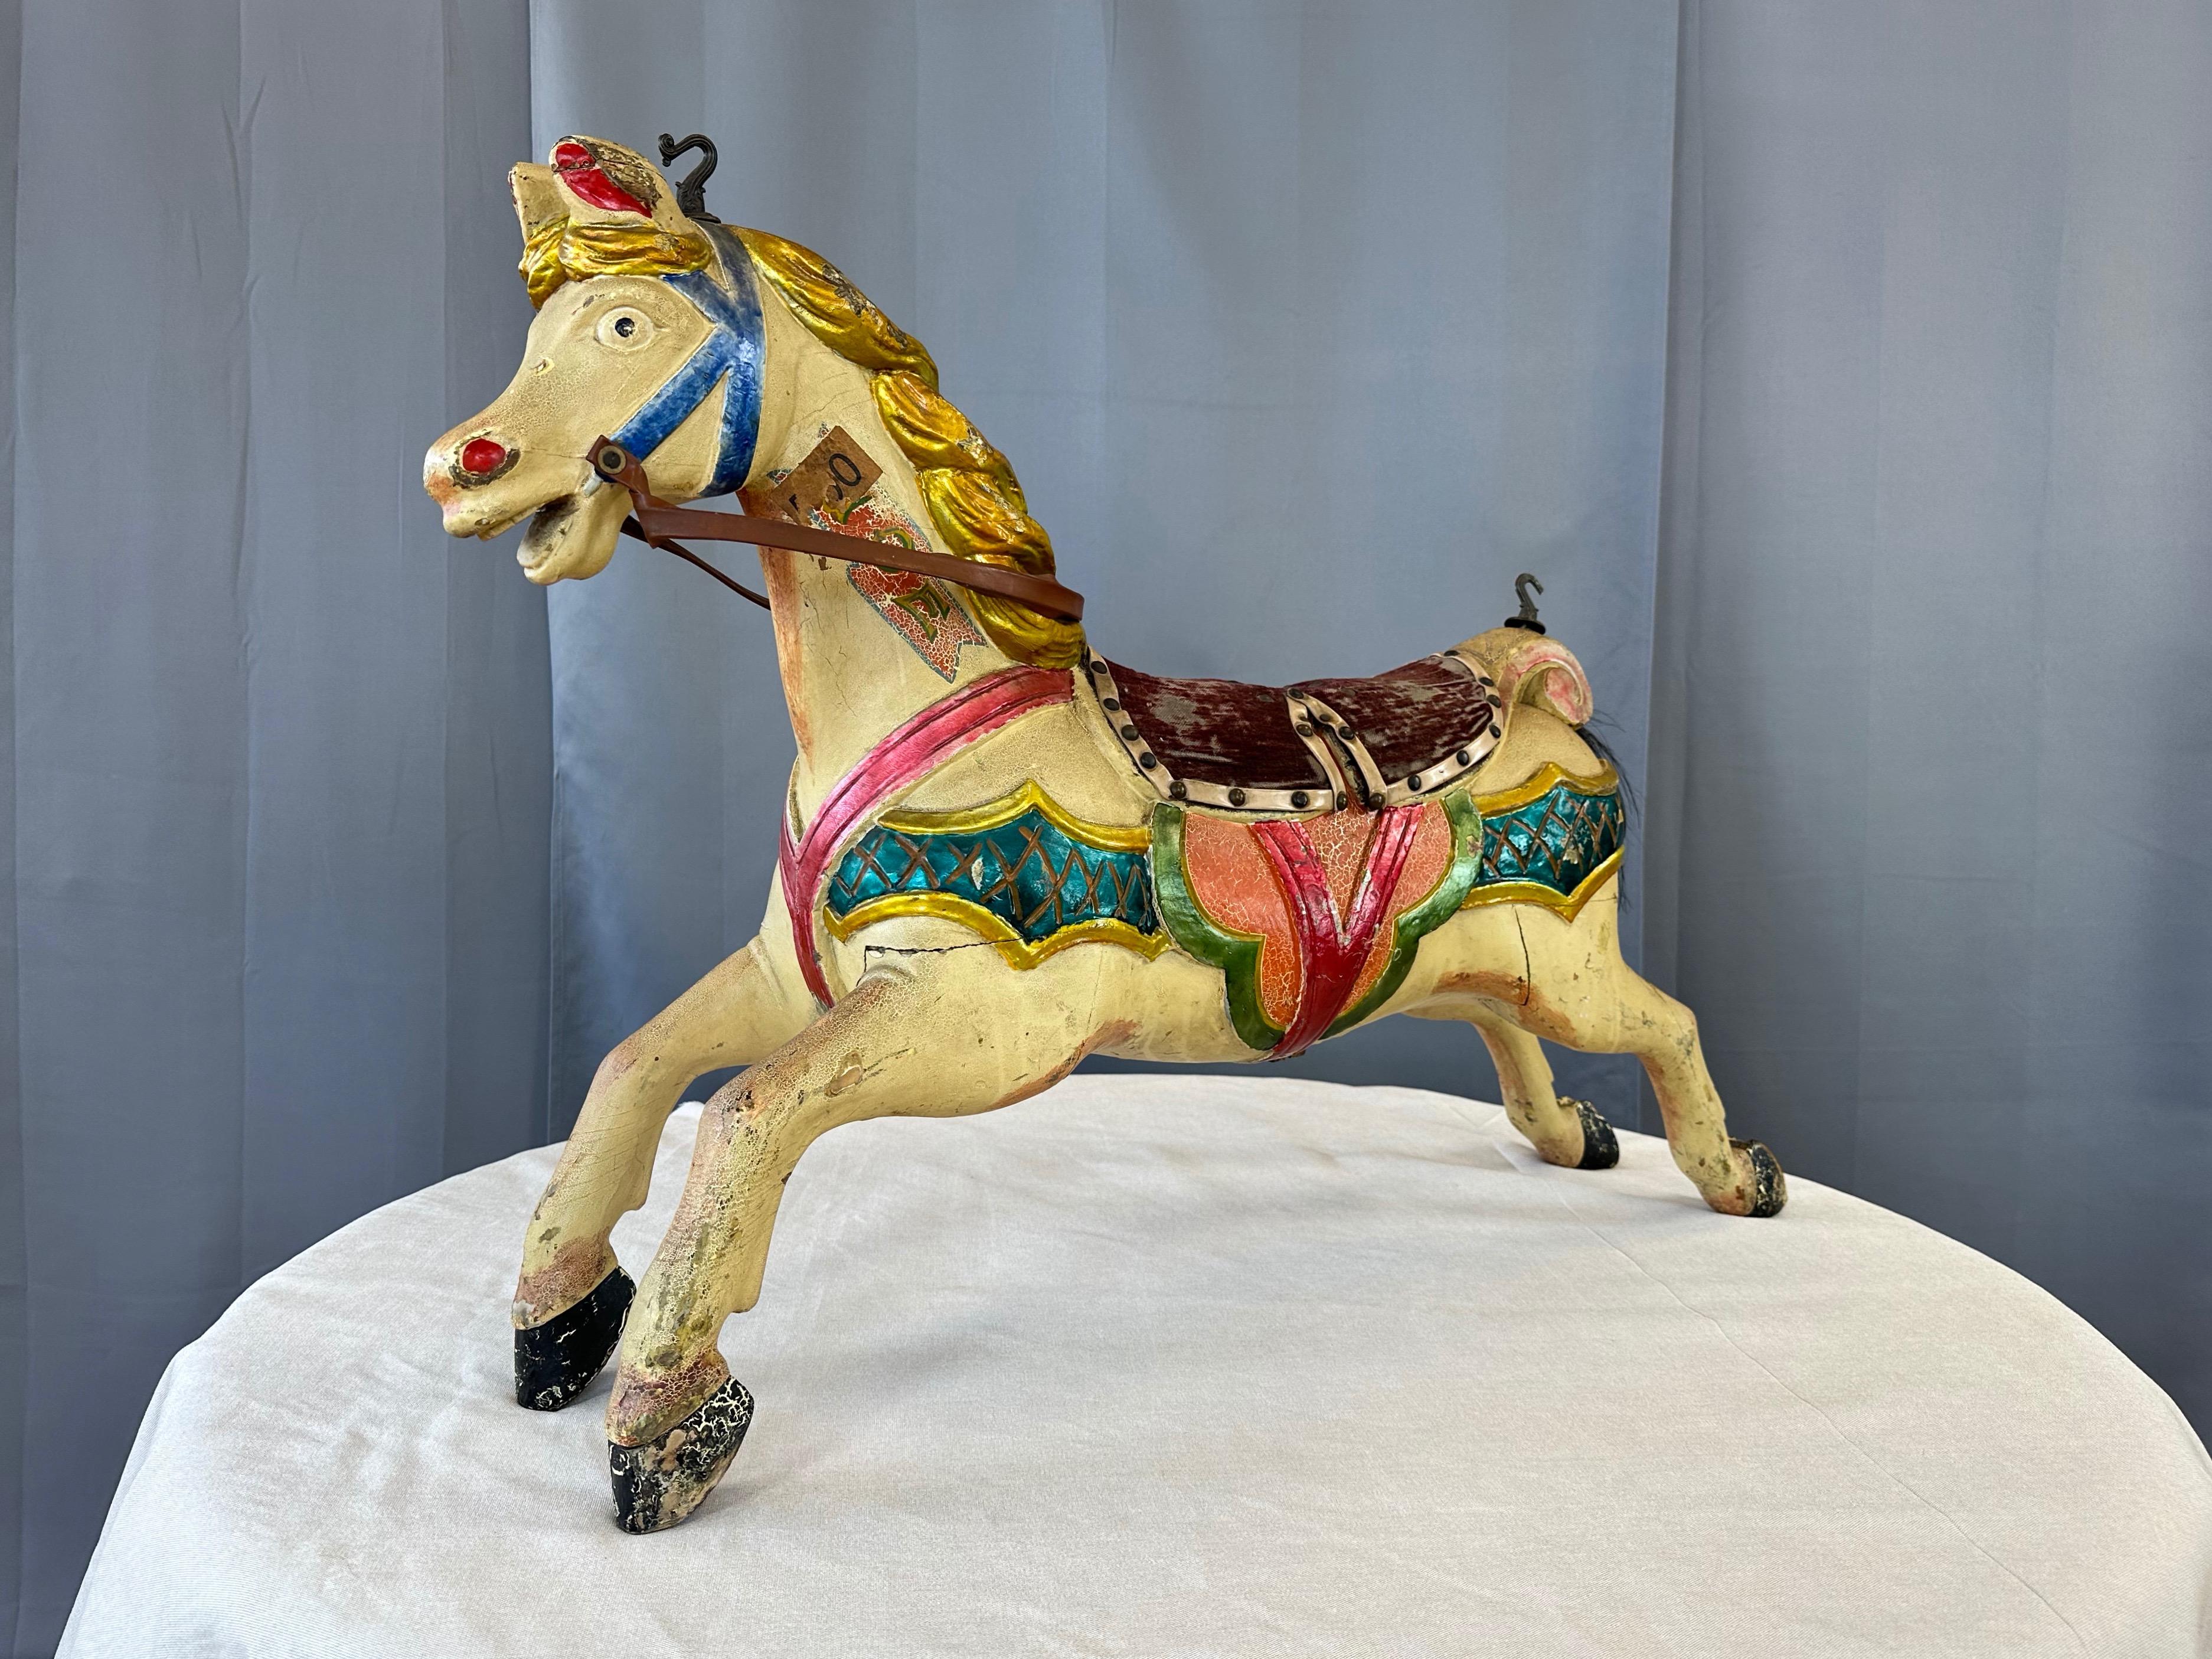 Ein sehr charmantes und farbenfrohes CIRCA 1920 antikes Kinderkarussellpferd aus Holz mit polychromer Oberfläche, Mohair-Sattel und Pferdeschwanz.

Dieses handgeschnitzte Holzkarussellpferd in Kindergröße hat einen aufgeregten Gesichtsausdruck und